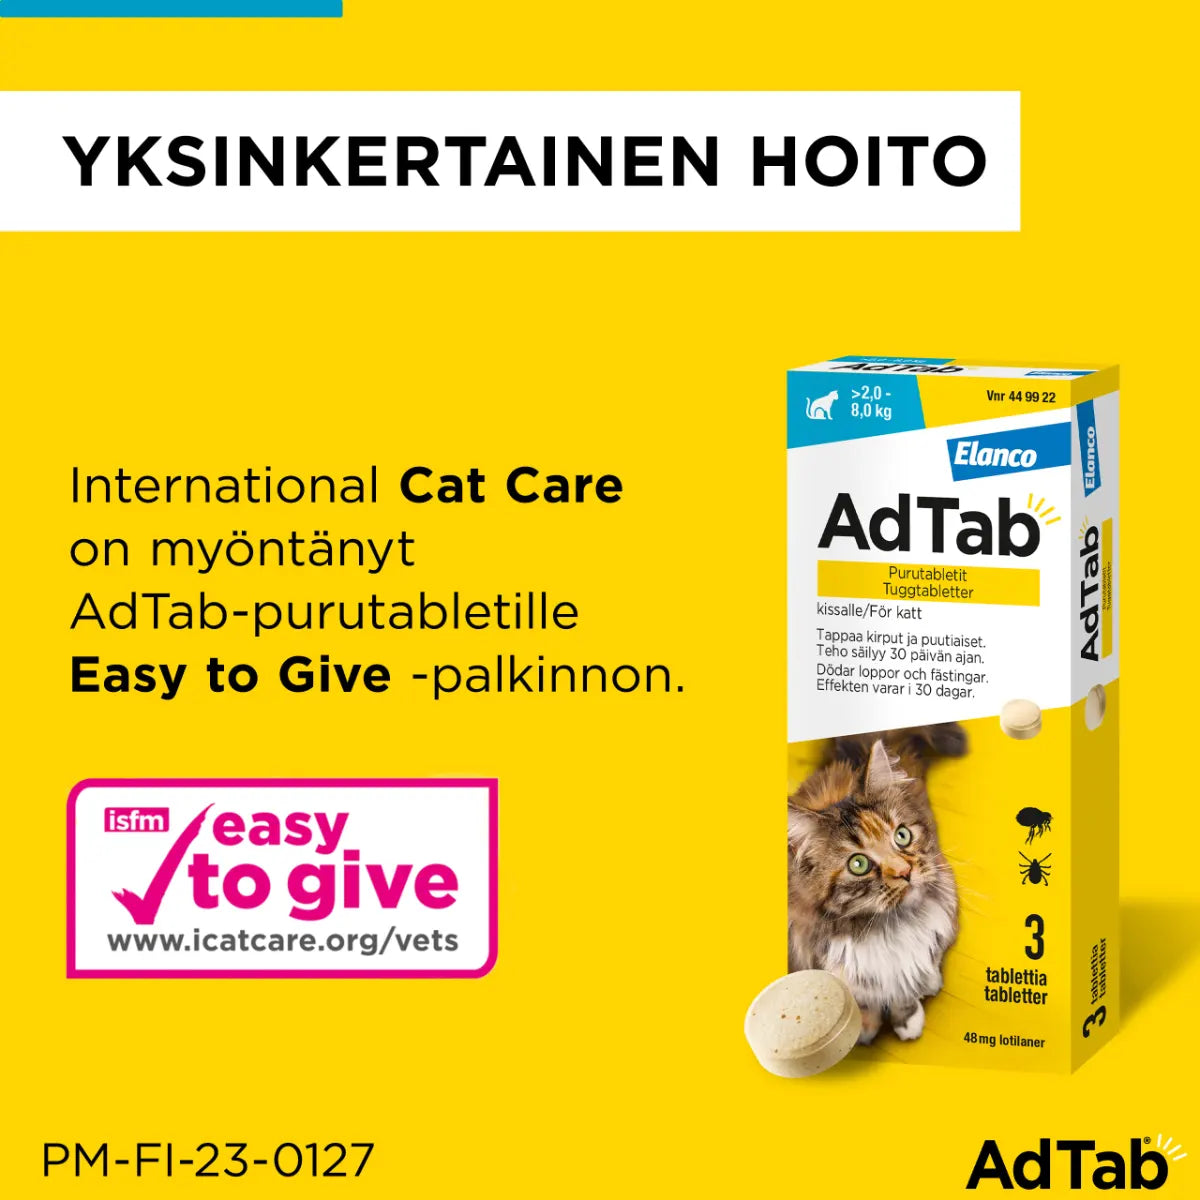 ADTAB 12 mg Vet purutabletti kissoille 0,5-2 kg 3 kpl yksinkertainen hoito